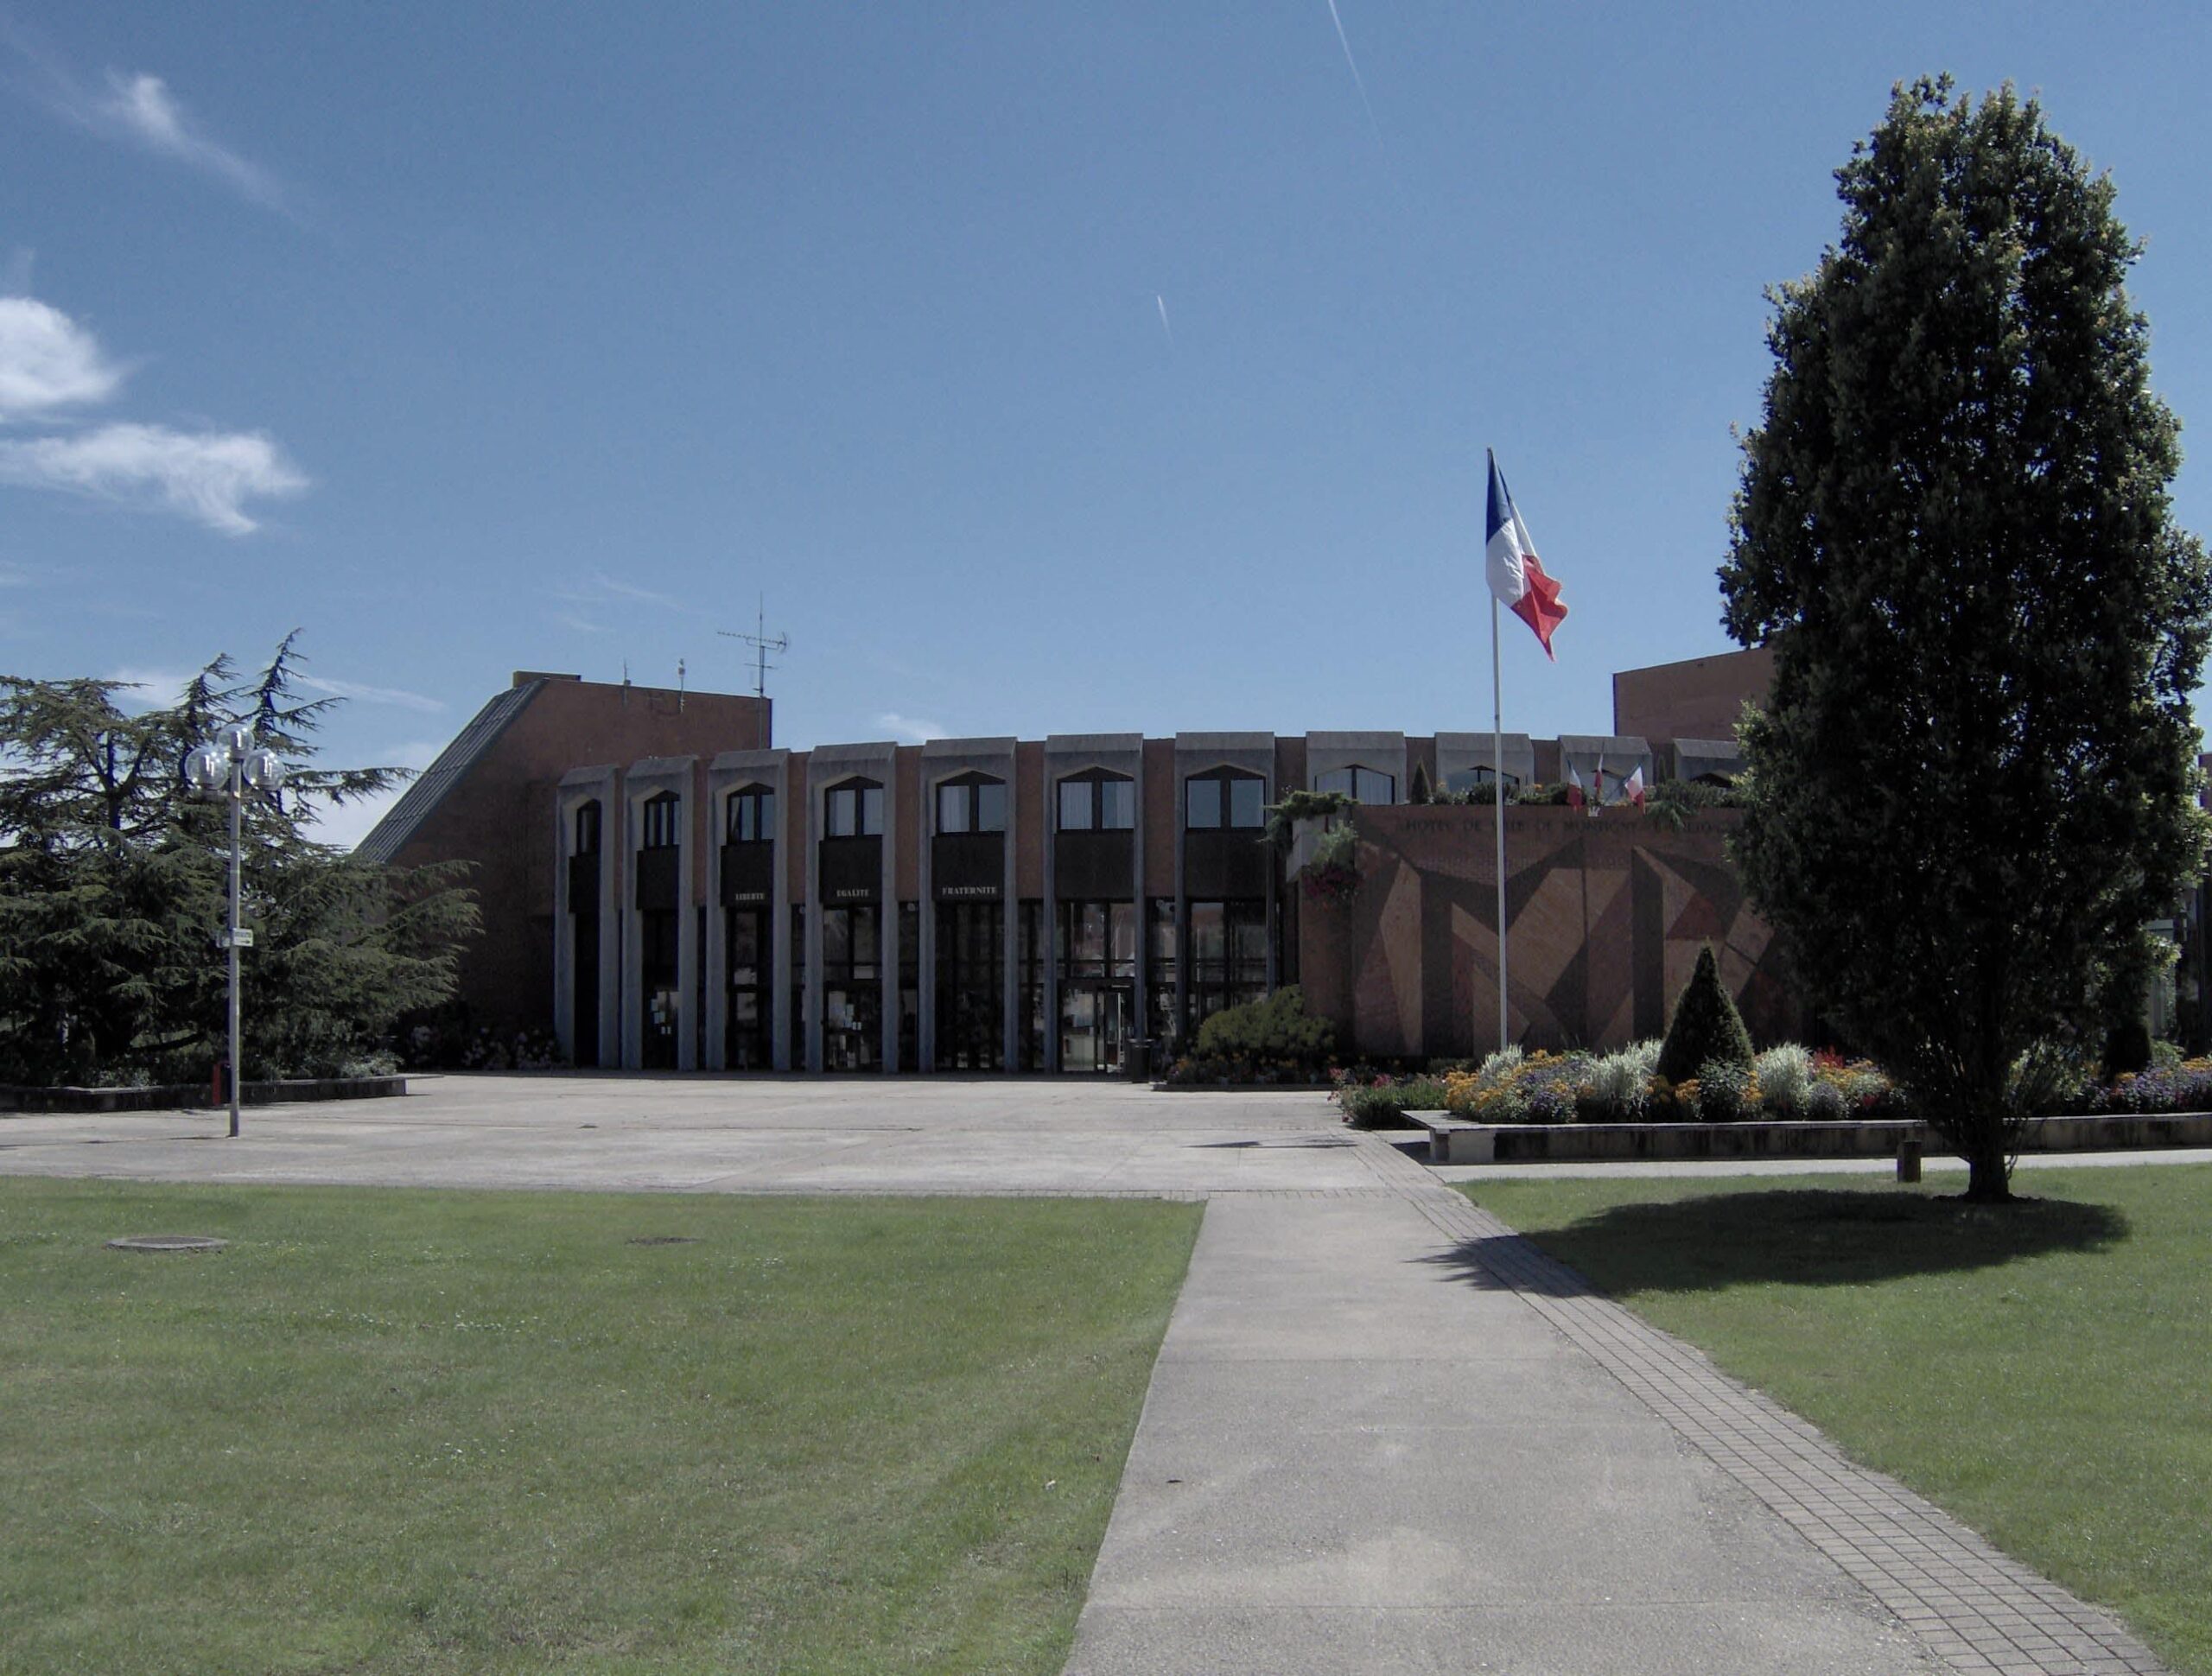 Mairie de Montigny-le-Bretonneux : Services, horaires et informations pratiques